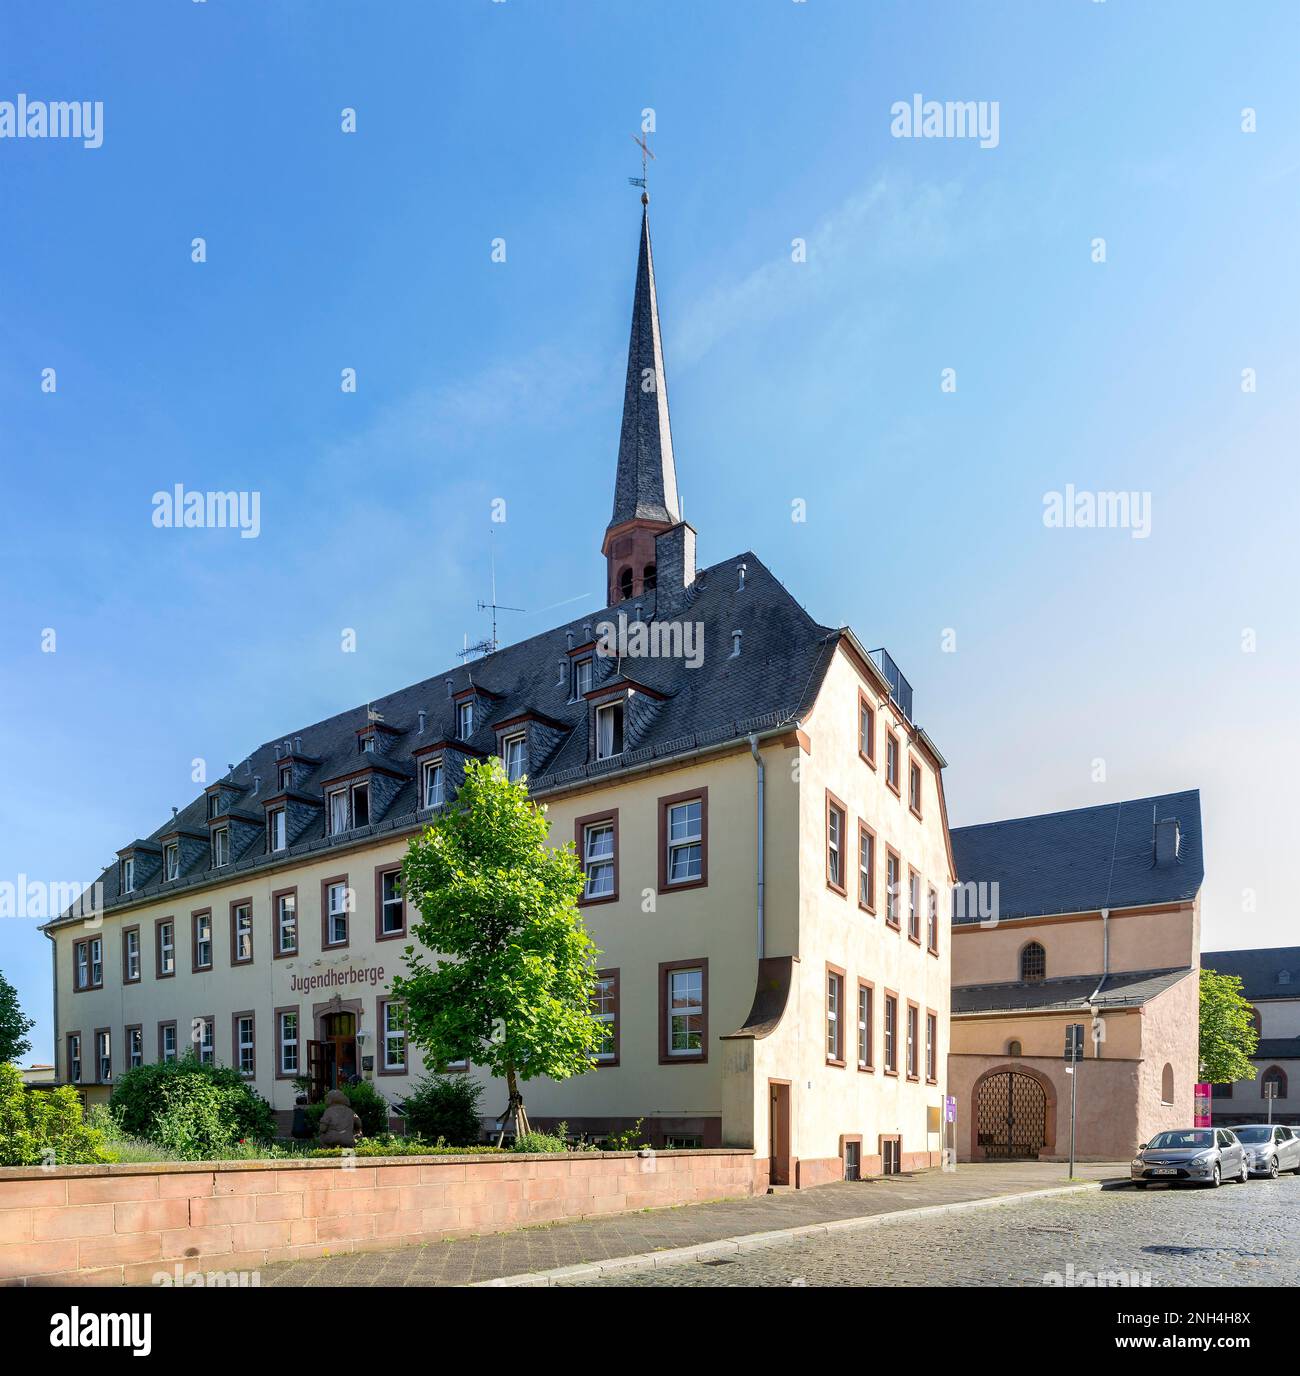 Rhine-Hesse region Youth Hostel, originally Jesuit College, Worms, Rhineland-Palatinate, Germany Stock Photo